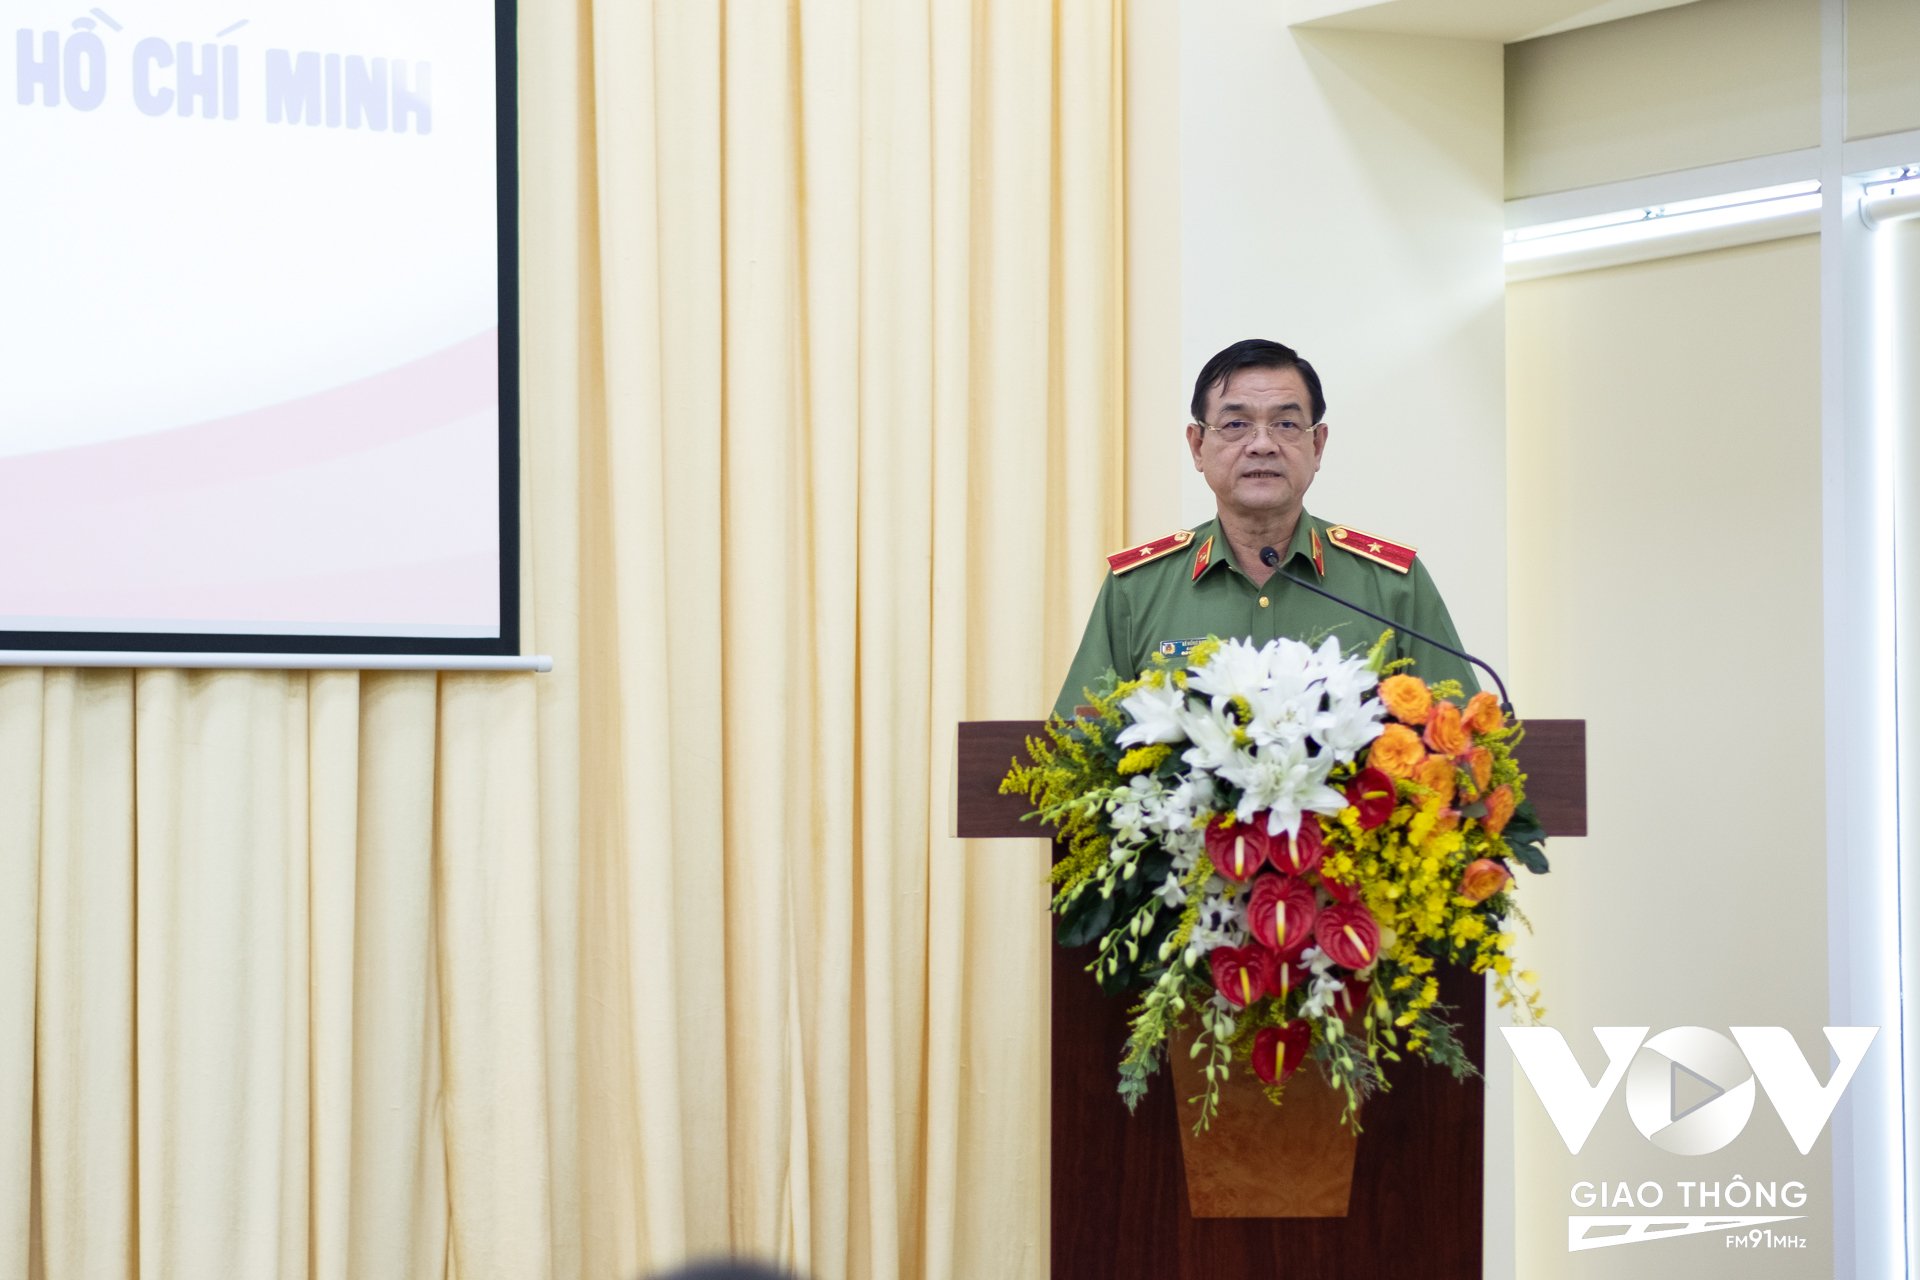 Thiếu tướng Lê Hồng Nam – Giám đốc Công an TP.HCM nhận định việc ký kết quy chế phối hợp hôm nay là cơ sở để 2 đơn vị có thể nâng cao hơn nữa vai trò, trách nhiệm trong công tác phối hợp, đảm bảo toàn diện, chặt chẽ hơn nữa trong công tác